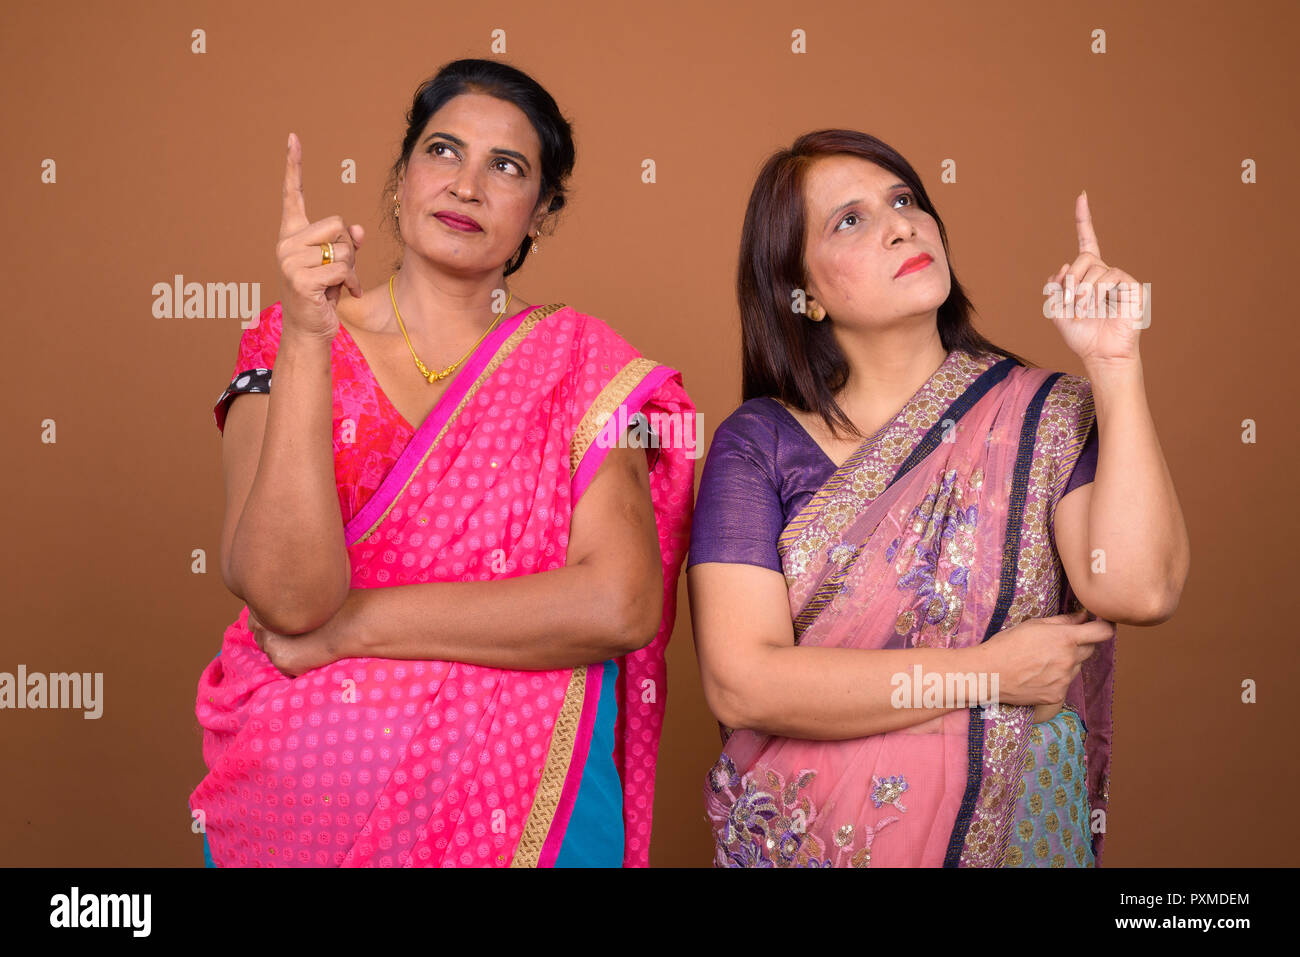 Deux Indiens mature woman thinking et doigt jusqu' Banque D'Images